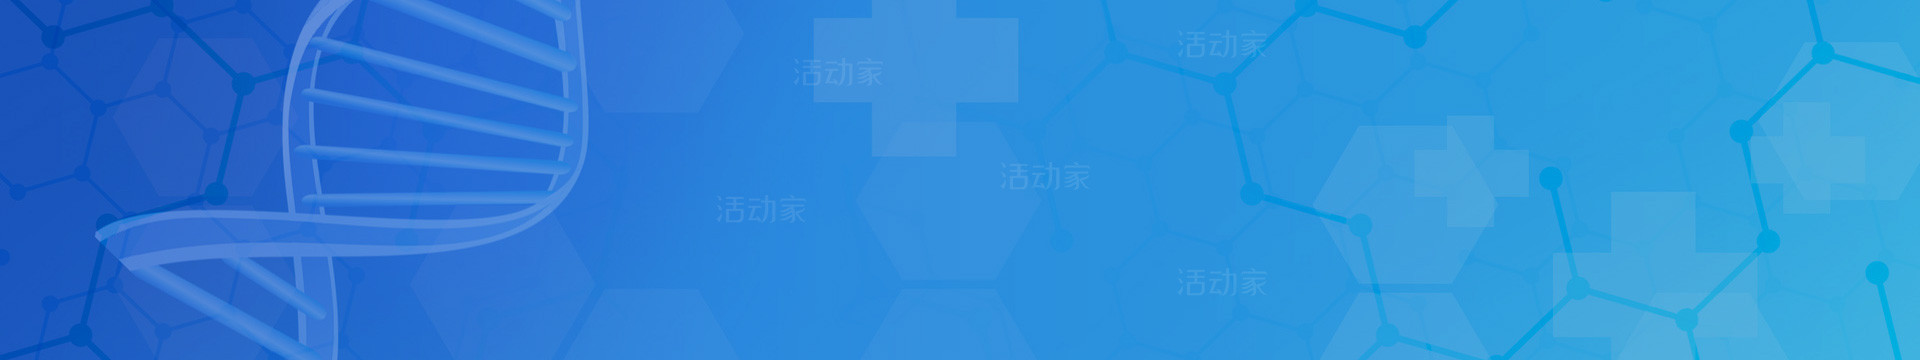 2022（第七届）中国国际骨科研究大会暨展览会